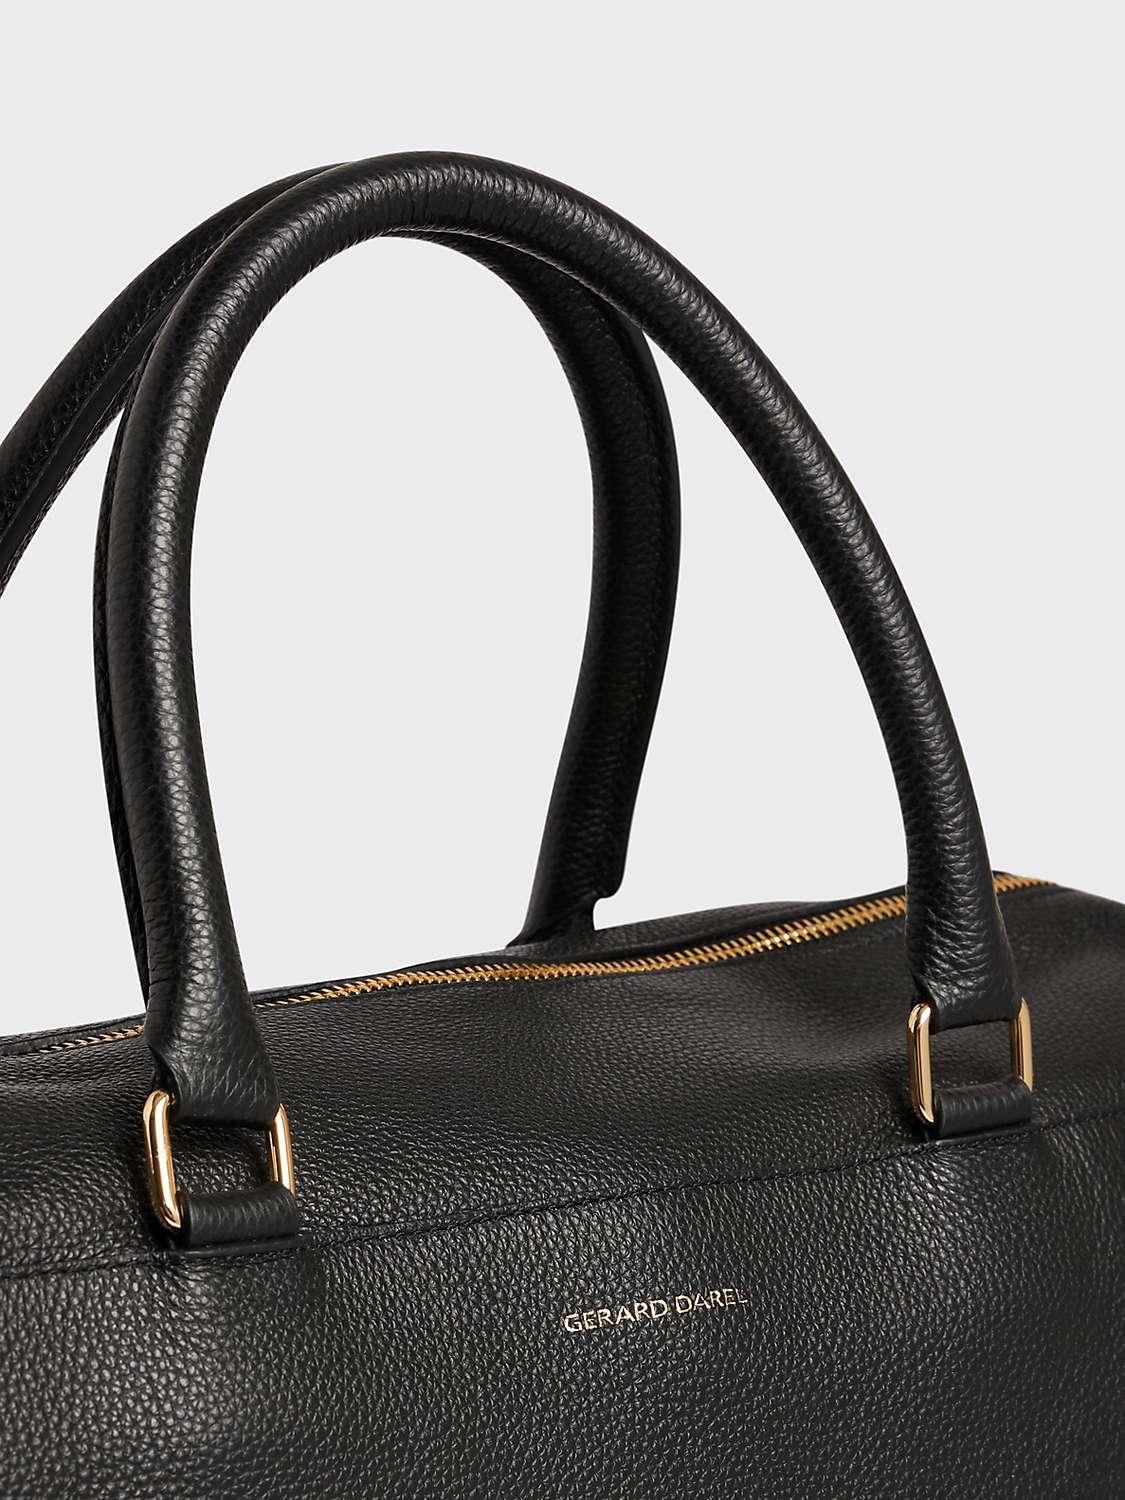 Gerard Darel Le Jackie Leather Shoulder Bag, Black at John Lewis & Partners